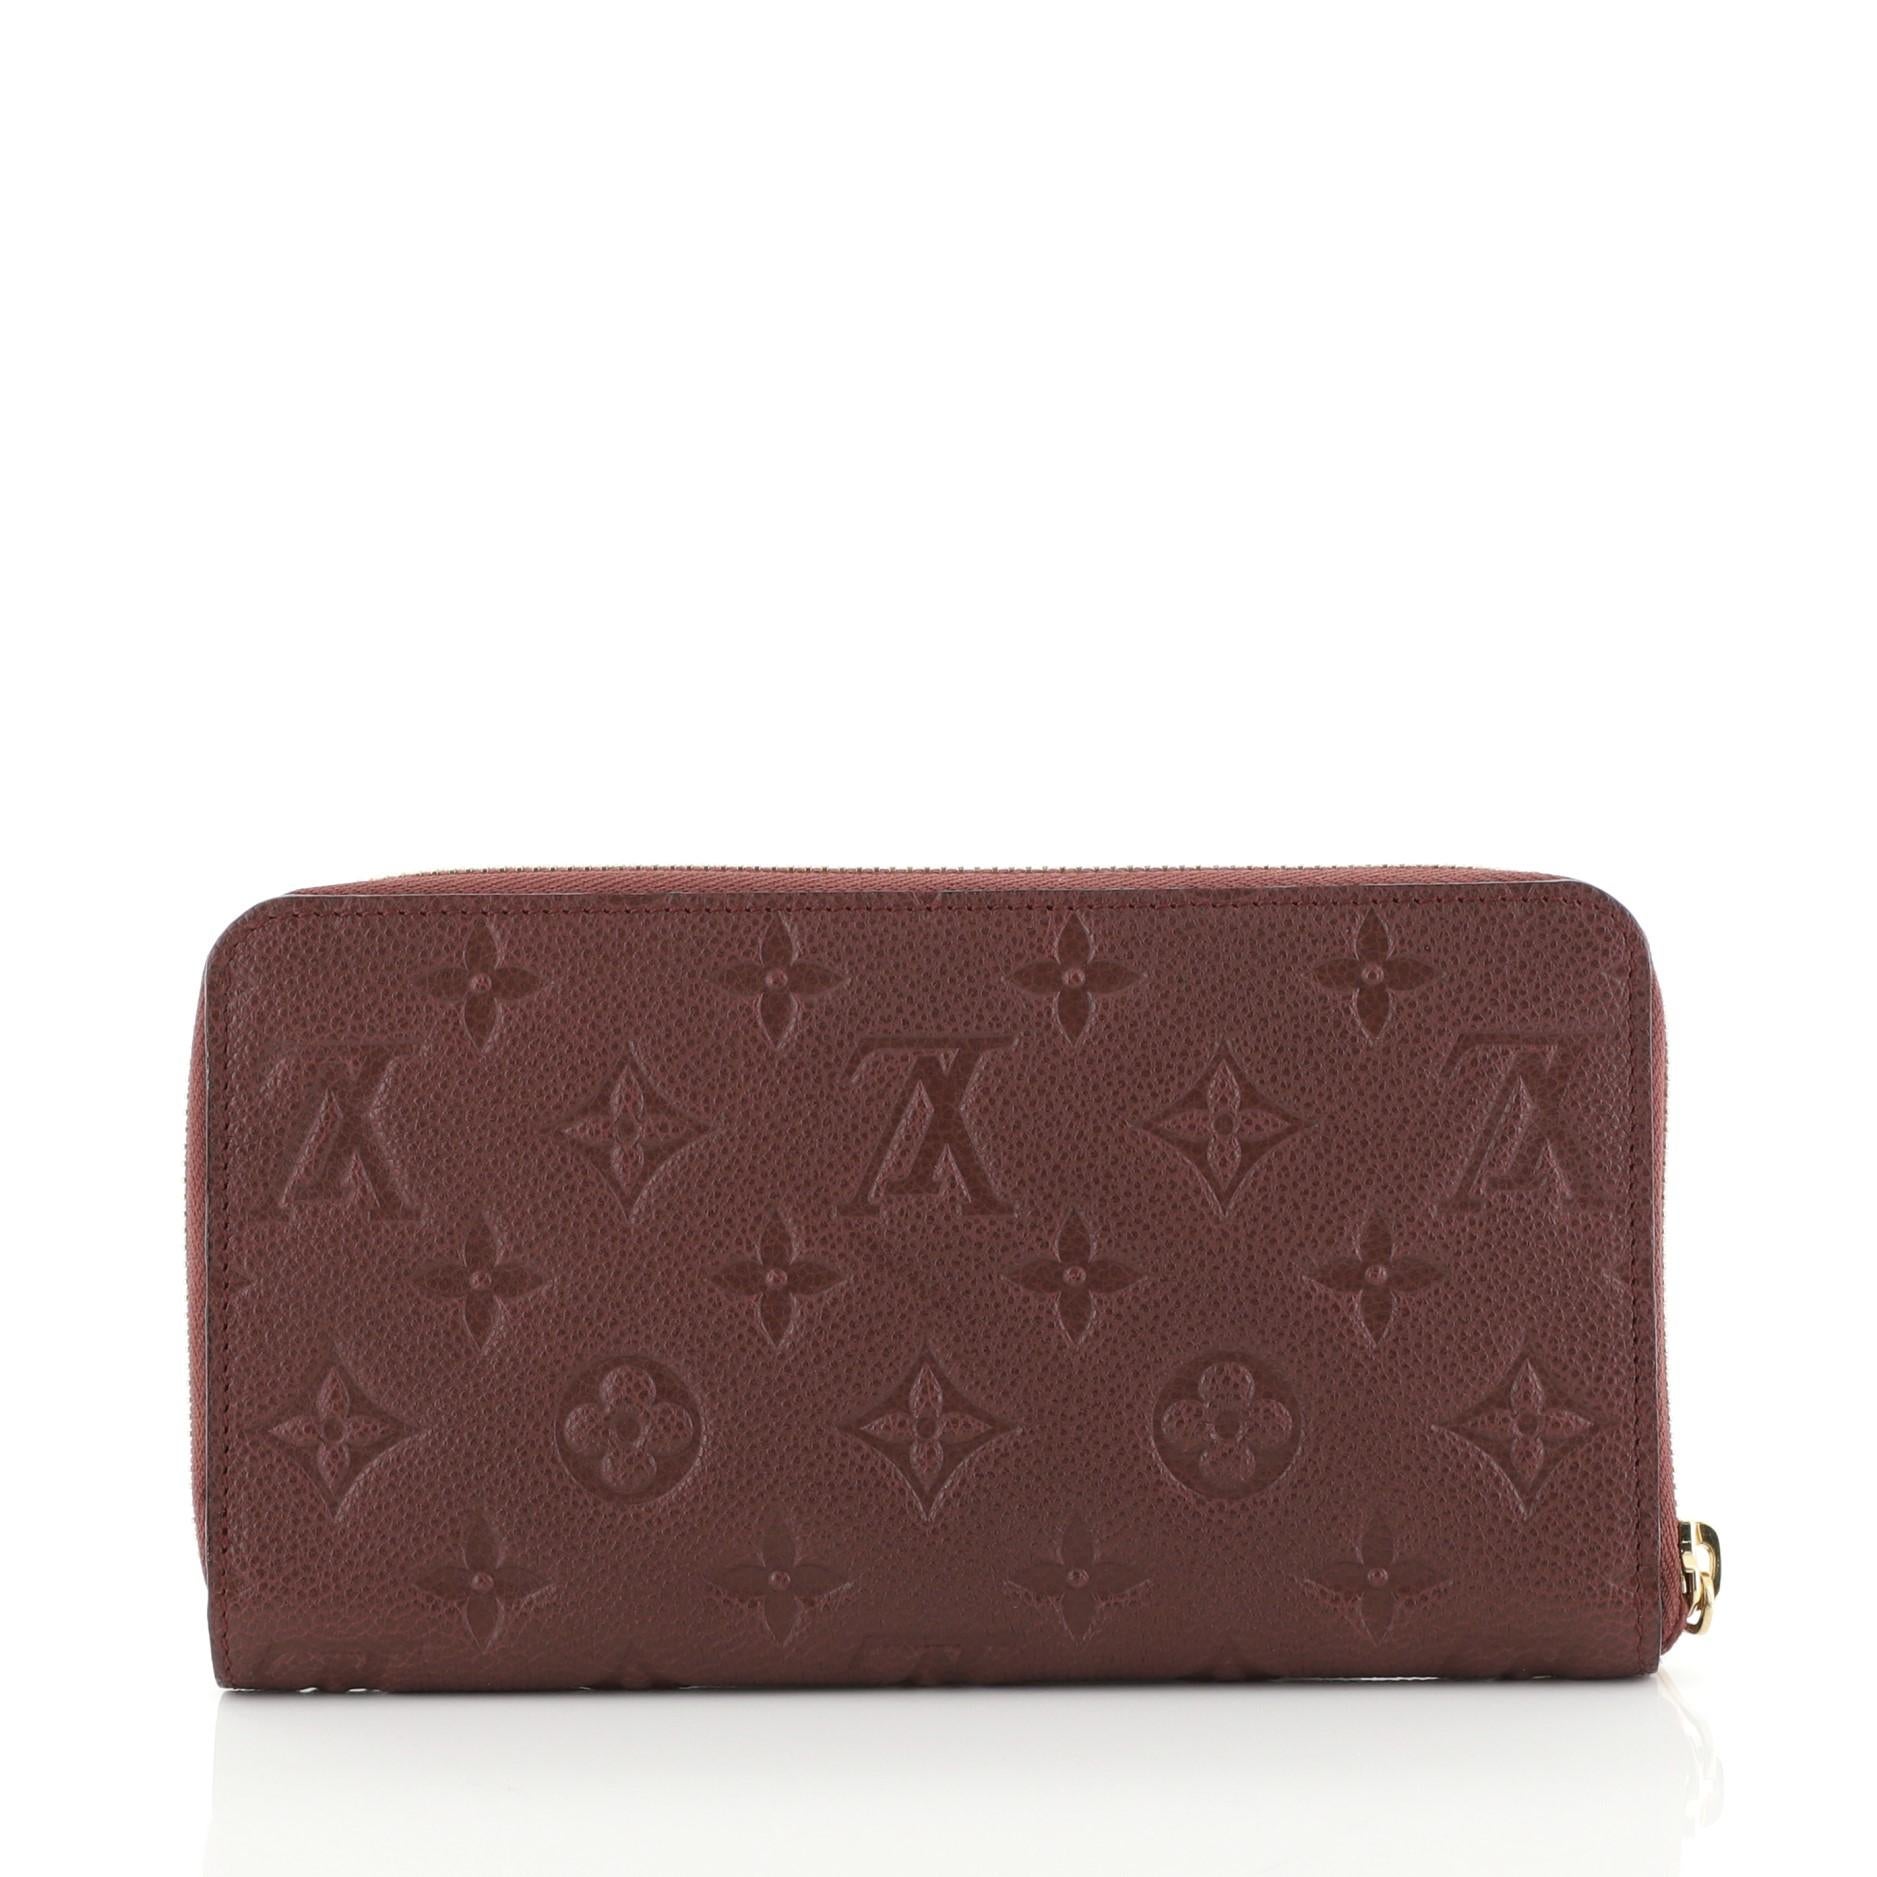 Black Louis Vuitton Secret Wallet Monogram Empreinte Leather